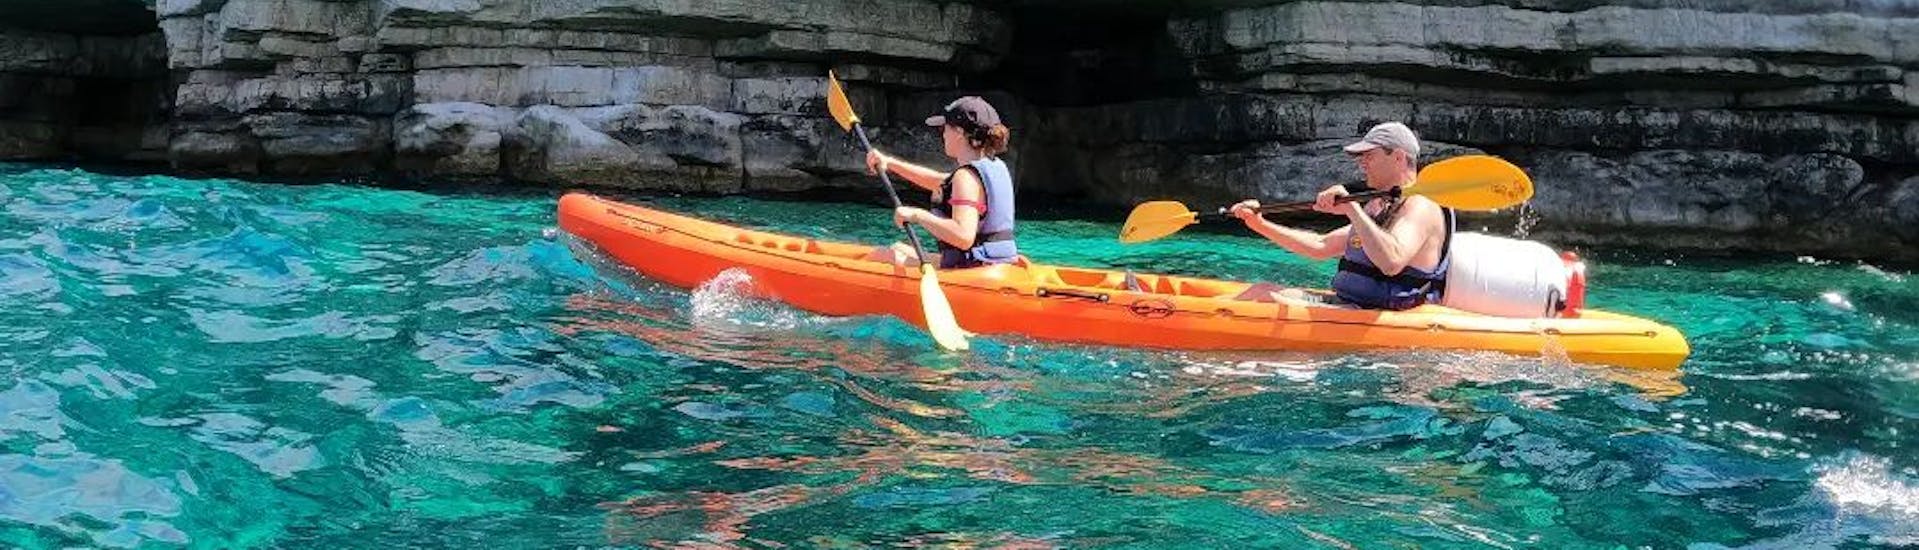 Zee kayak in het blauwe water van de Adriatische zee voor een grot tijdens Zee kayak tour naar de grotten van Pula door Pula Adventure Team.